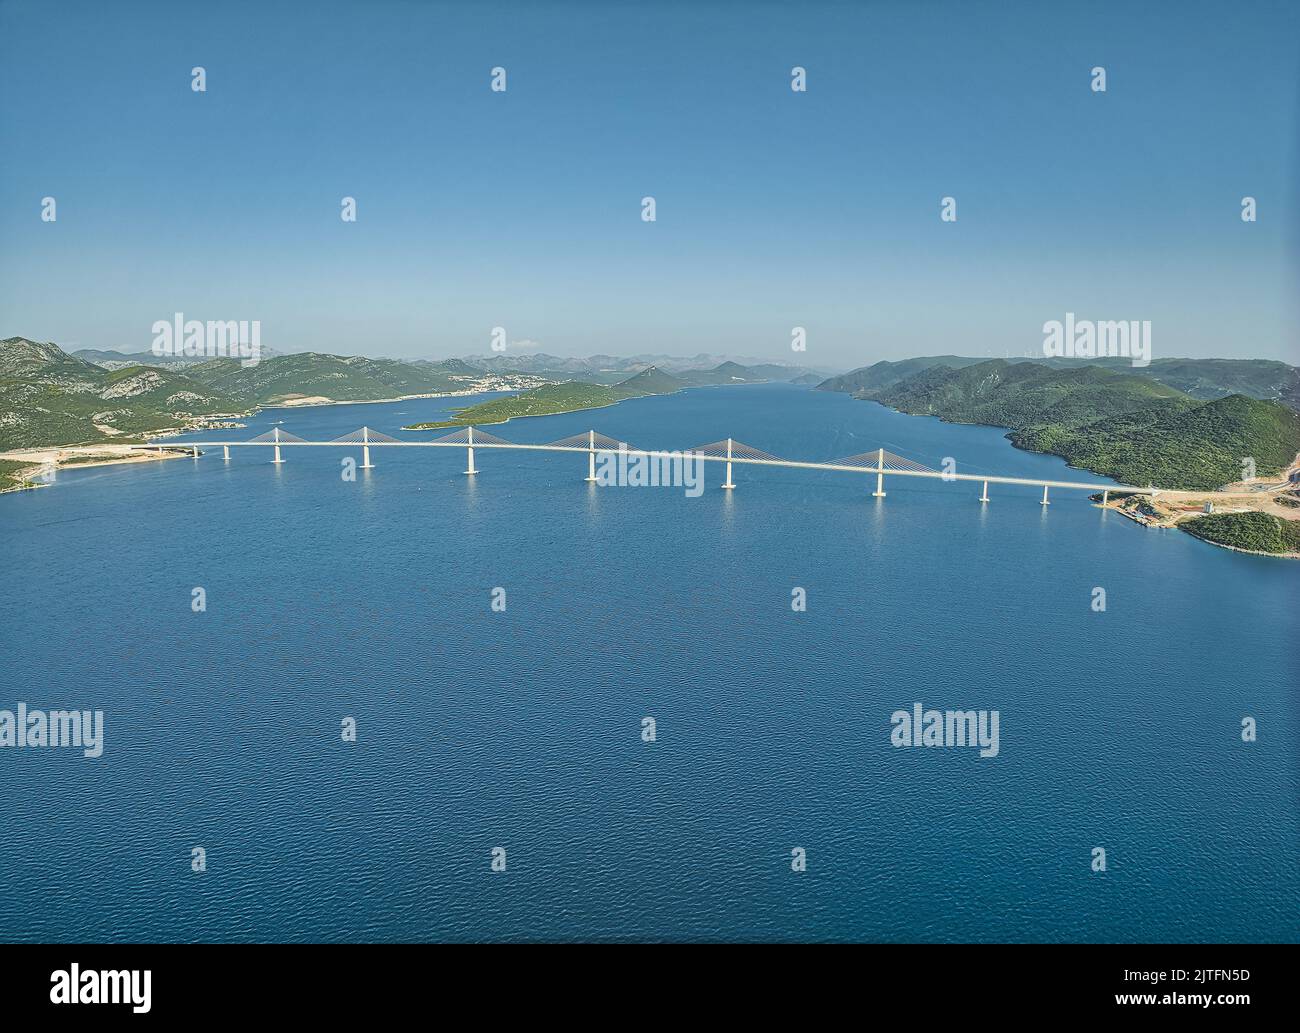 Aerial view of the Peljesac bridge at dusk Stock Photo